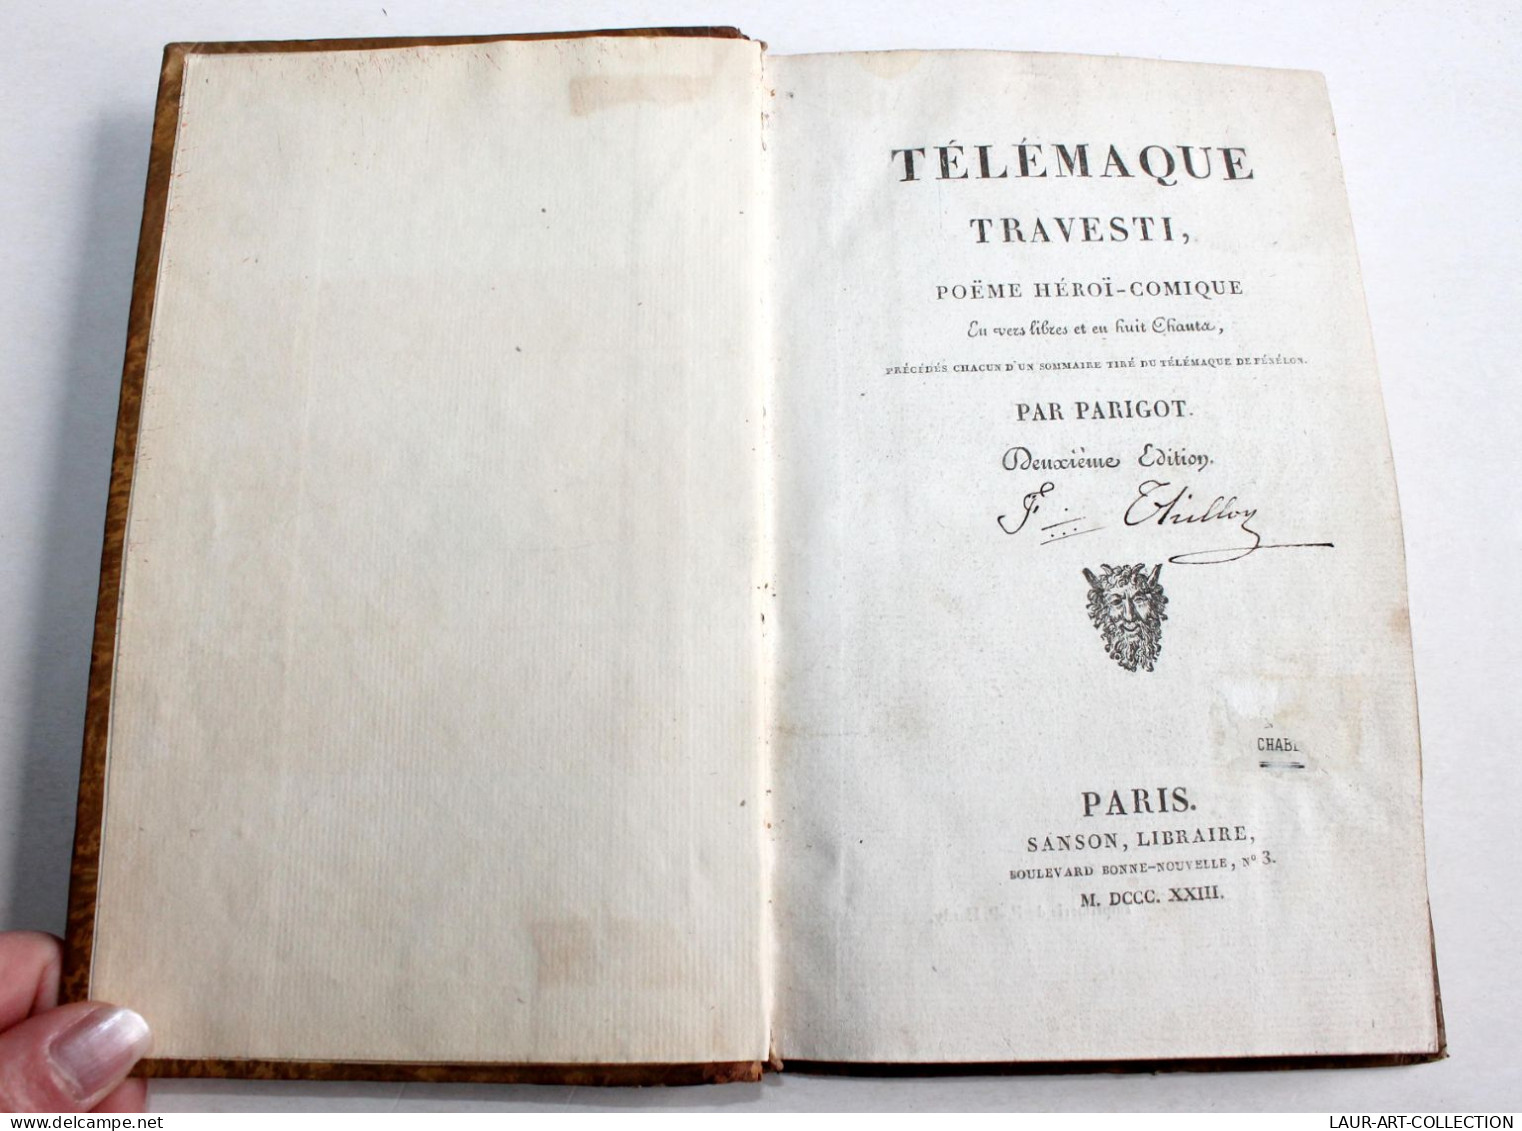 TELEMAQUE TRAVESTI POEME HEROI-COMIQUE EN VERS LIBRE Par PARIGOT 2e EDITION 1823 / ANCIEN LIVRE XIXe SIECLE (1803.79) - Französische Autoren